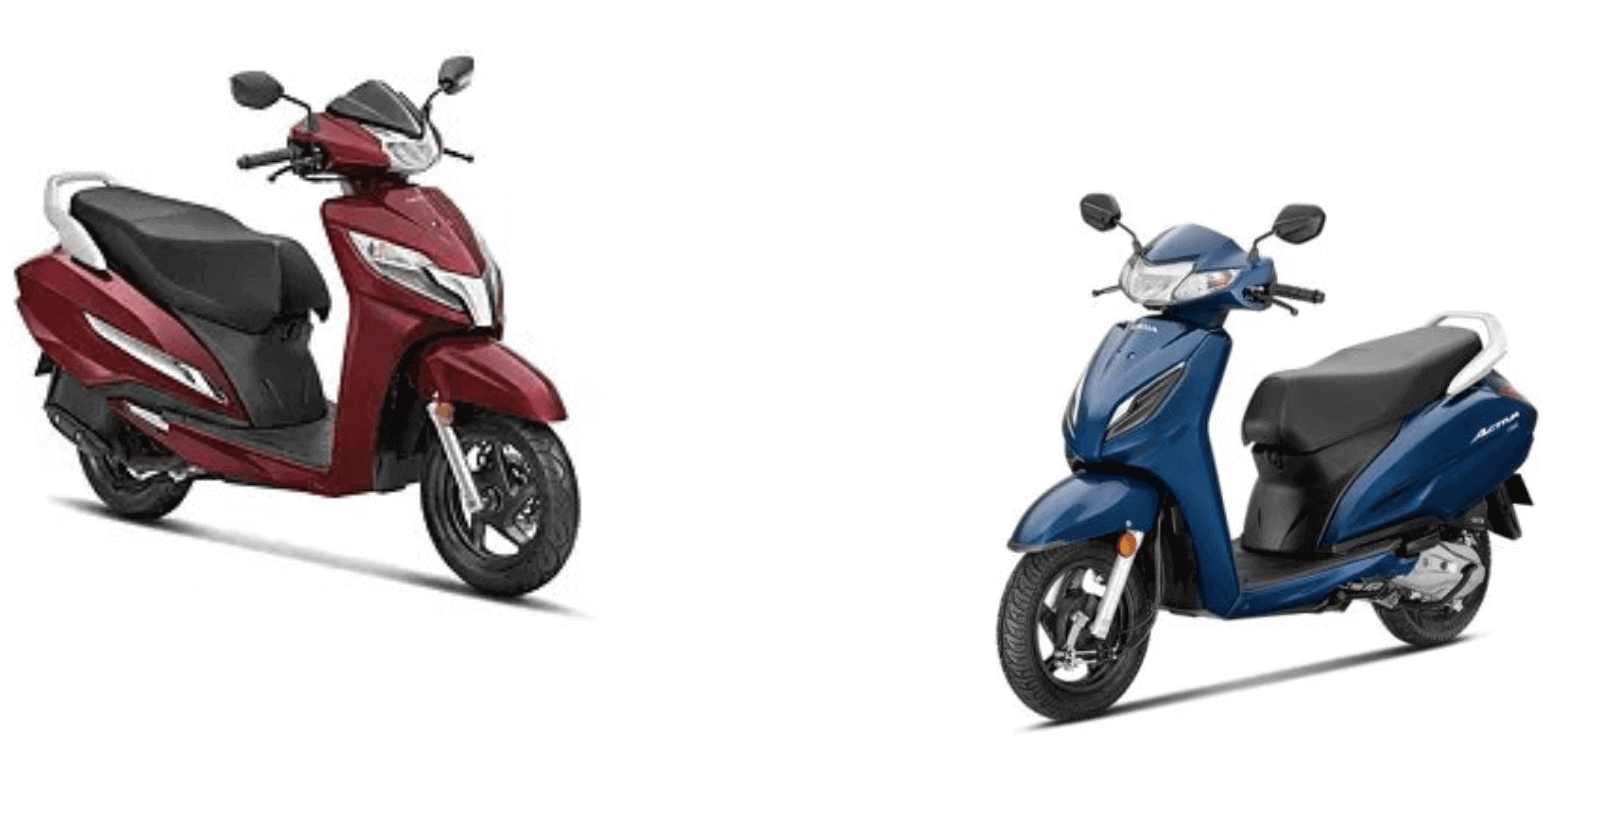 Honda Activa 6G vs Honda Activa 125 | Which is better? Compare Price, Mileage, Specs & More [2023 Guide]